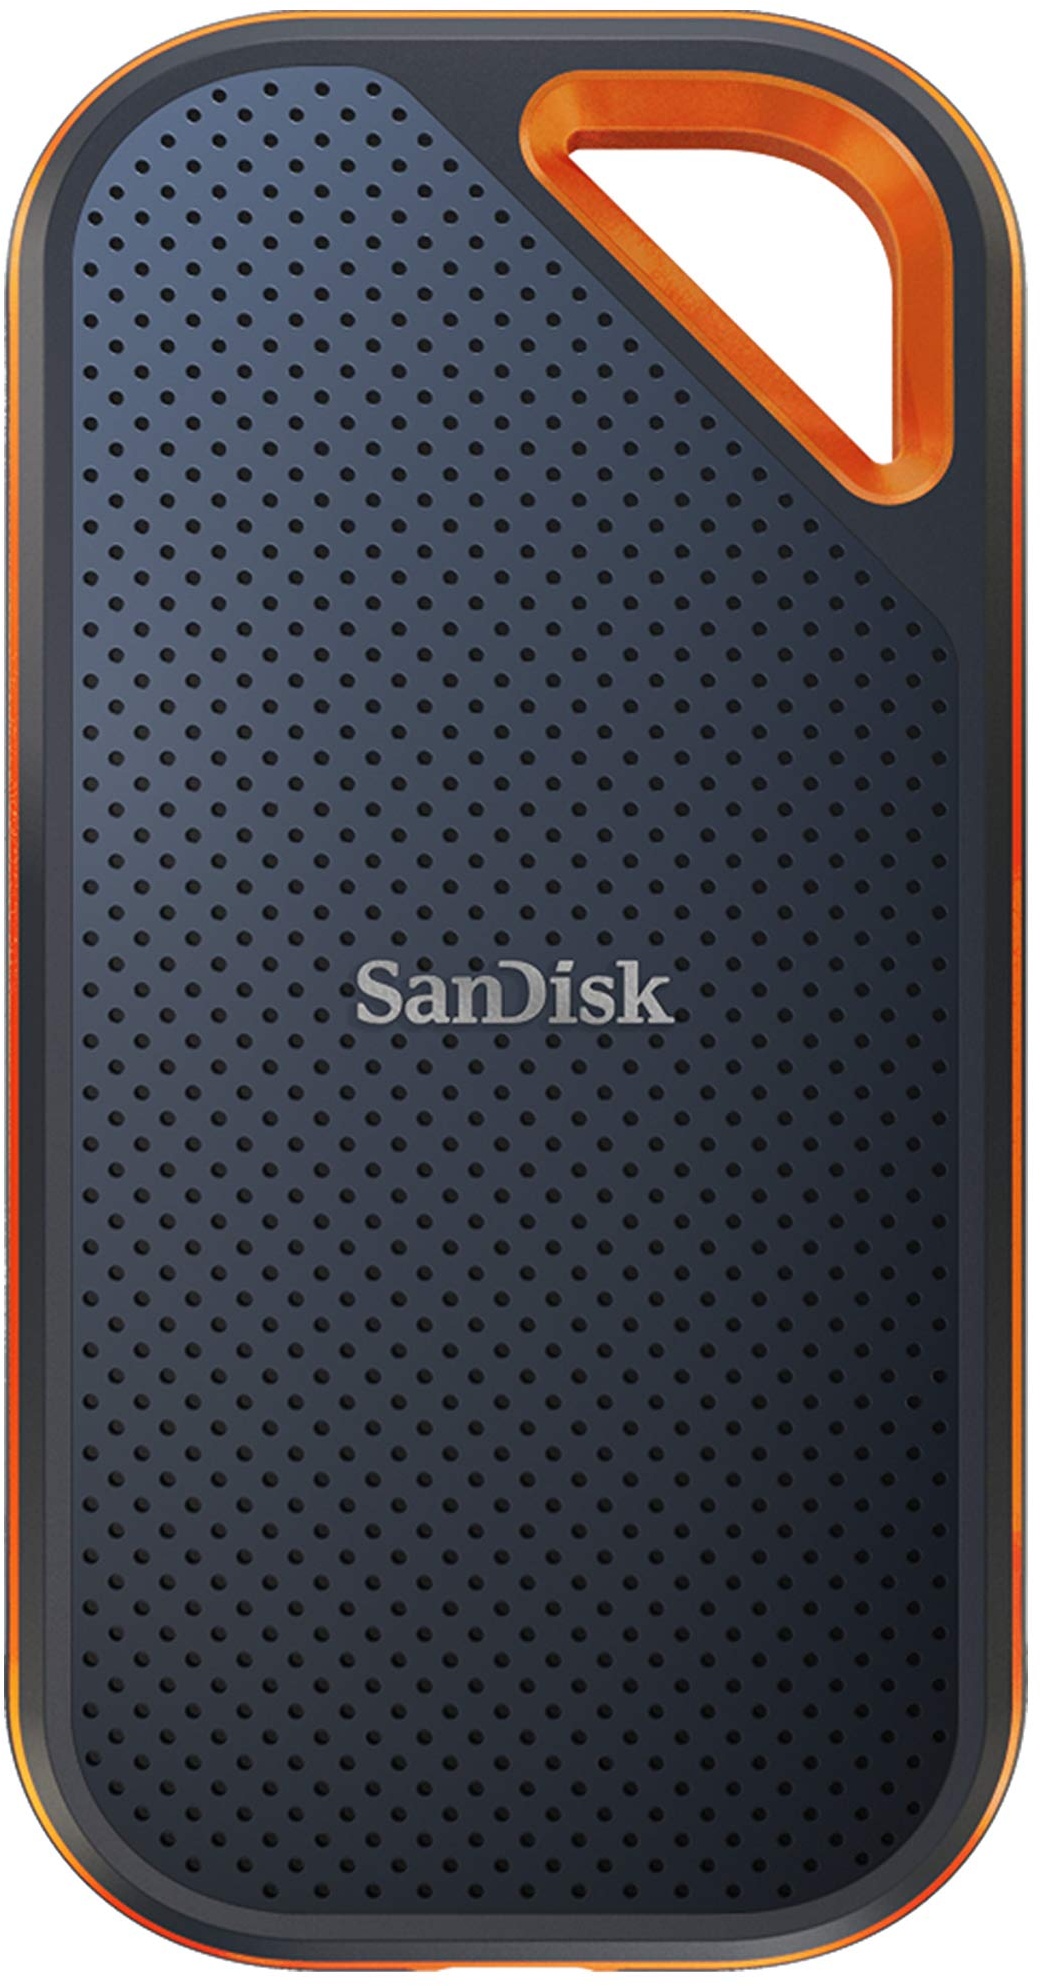 SanDisk Extreme PRO Portable SSD externe SSD 4 TB (externe Festplatte mit SSD Technologie 2,5 Zoll, 2000 MB/s Lesen und Schreiben, stoßfest, AES-Verschlüsselung, wasser- und staubfest) grau